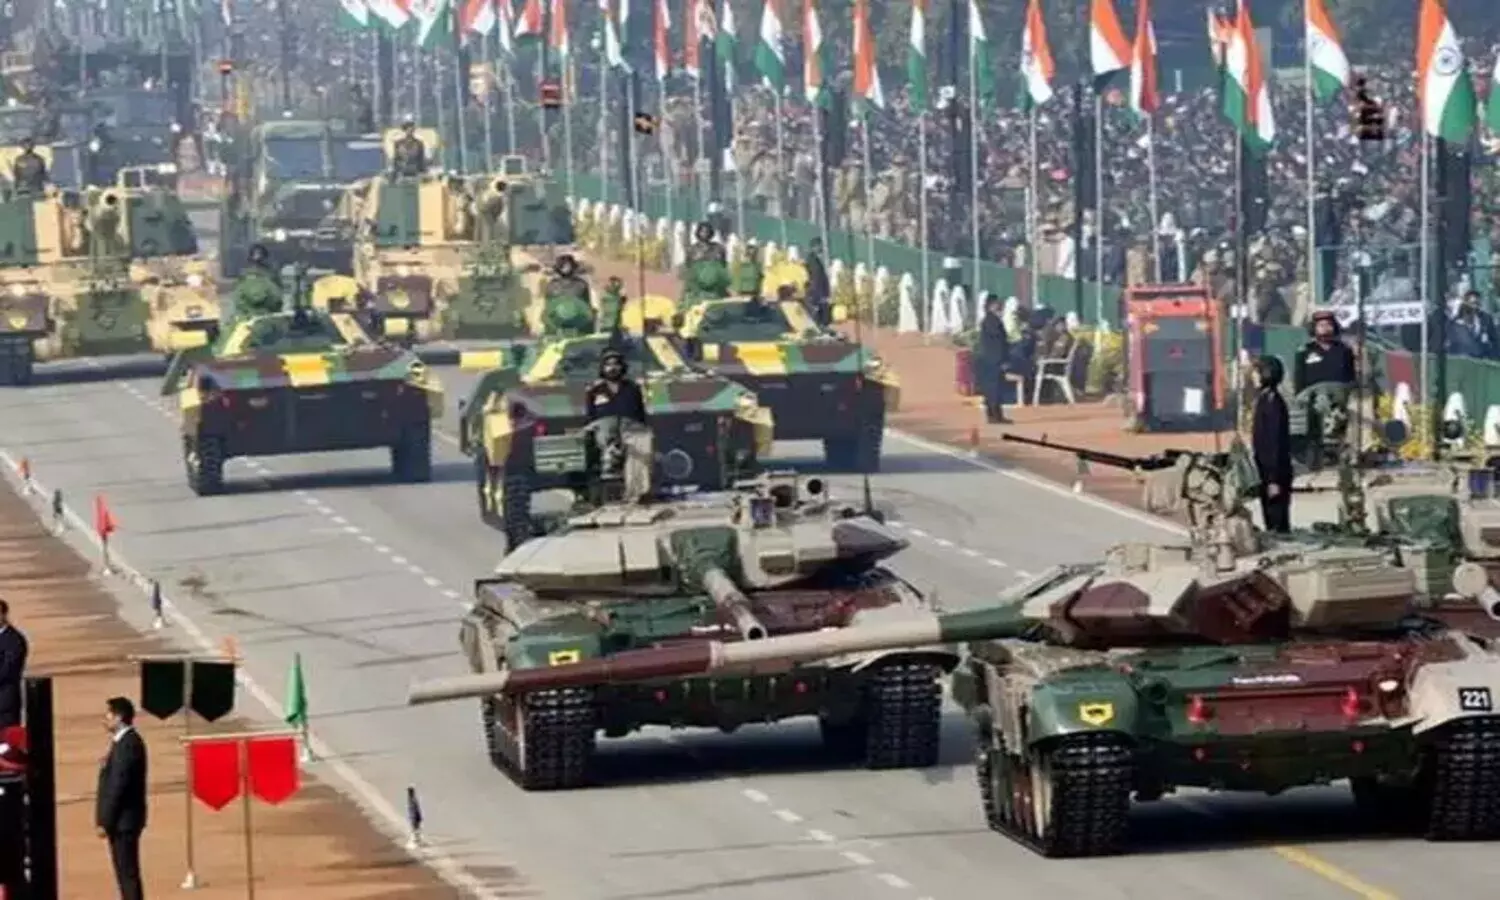 Defense Companies: भारतीय रक्षा कंपनियों को बड़ा फायदा, हासिल किया 8400 करोड़ रुपये का कारोबार